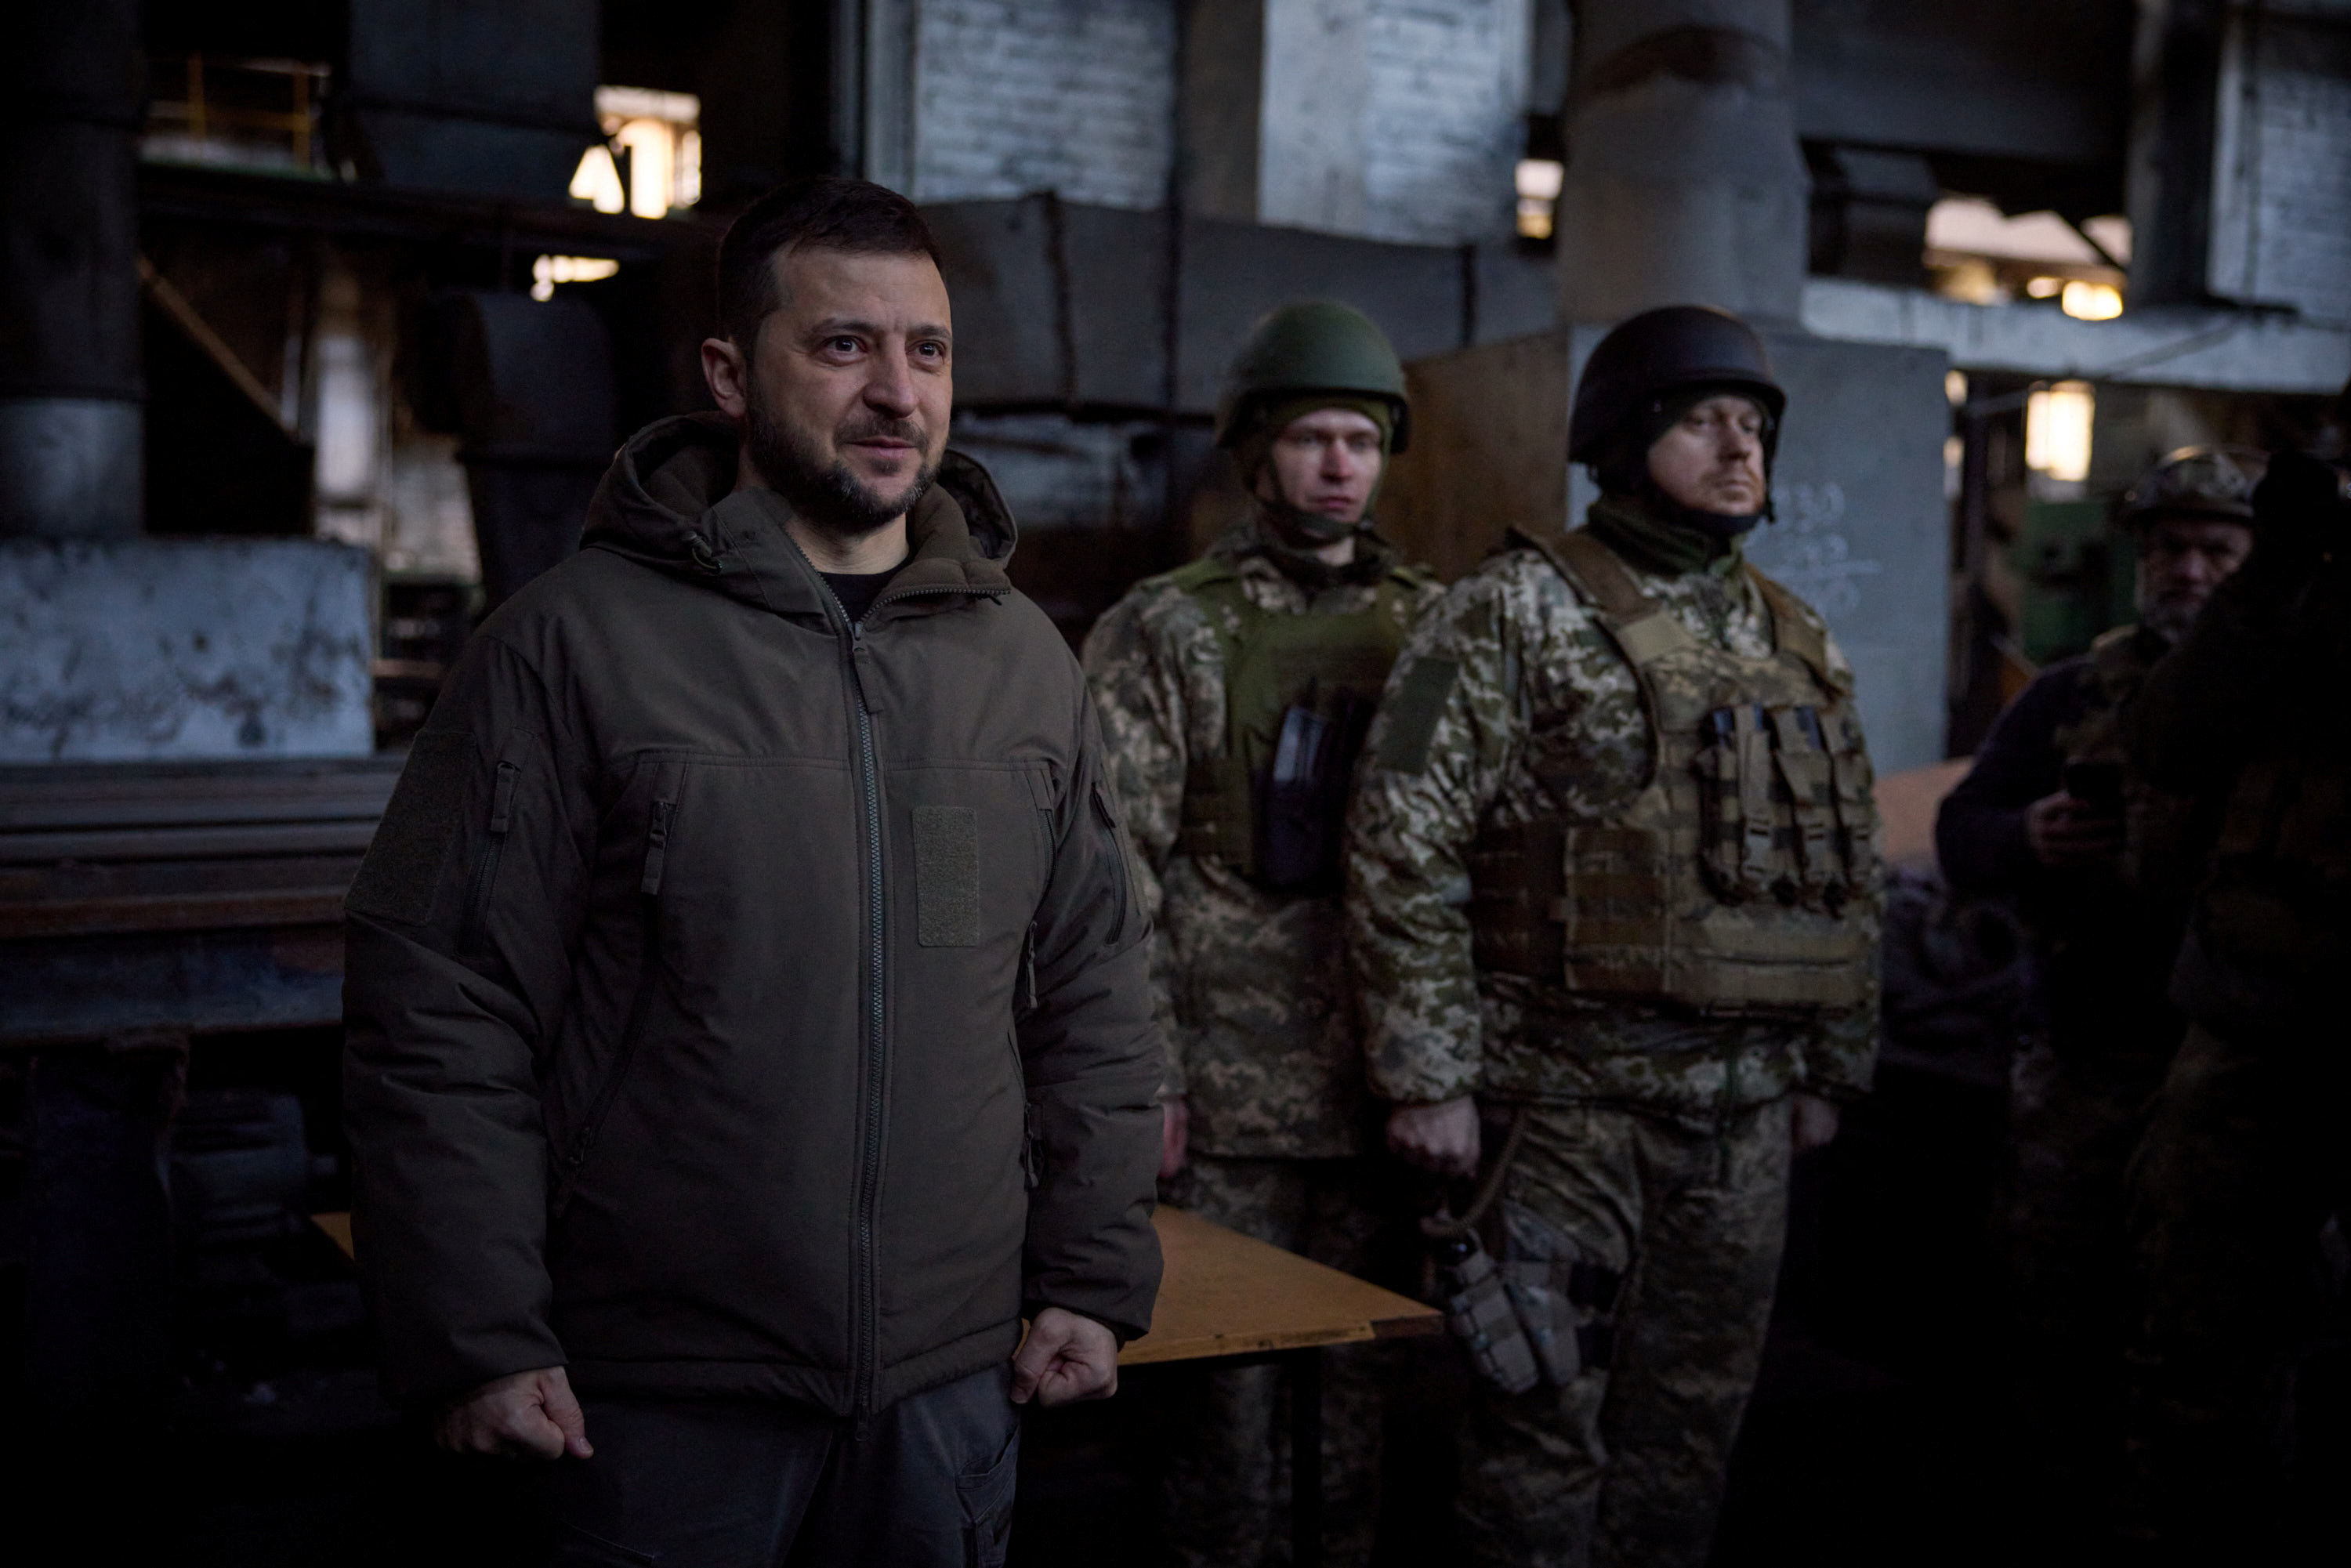 Ukrainian President Zelensky visited Ukrainian soldiers in Bakhmut